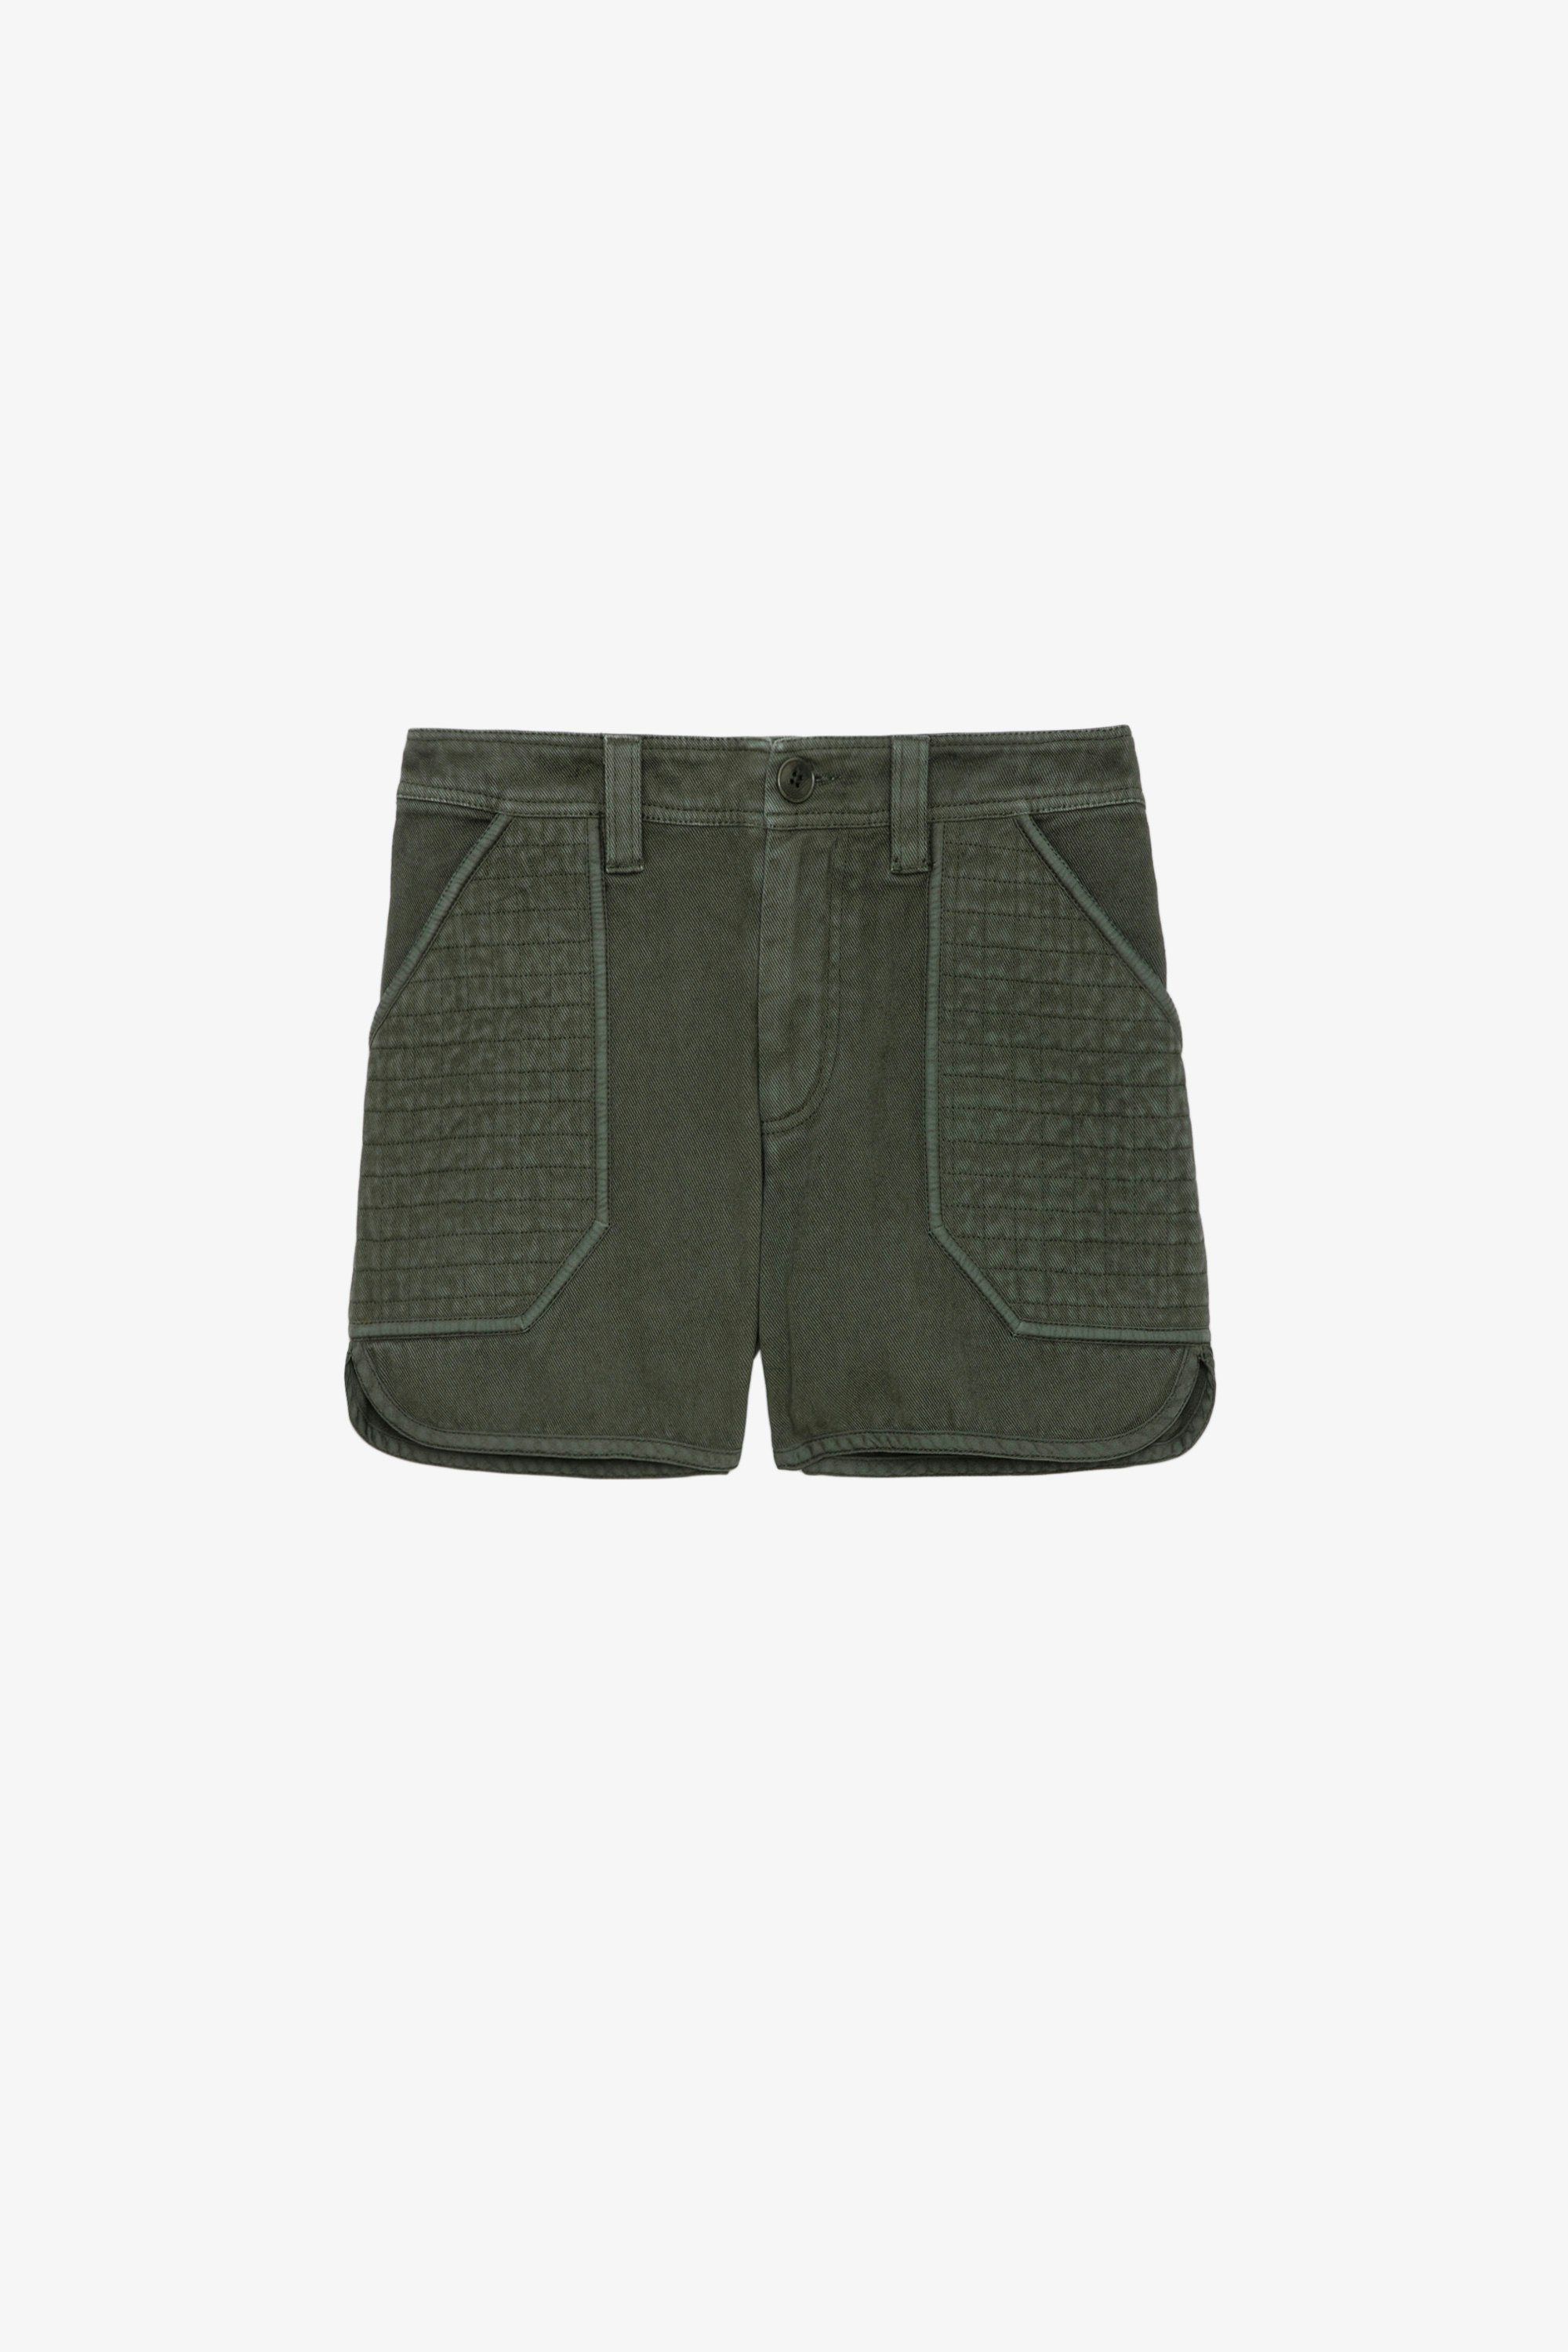 Short Sei - Short en sergé de coton kaki à poches et empiècements texturés.